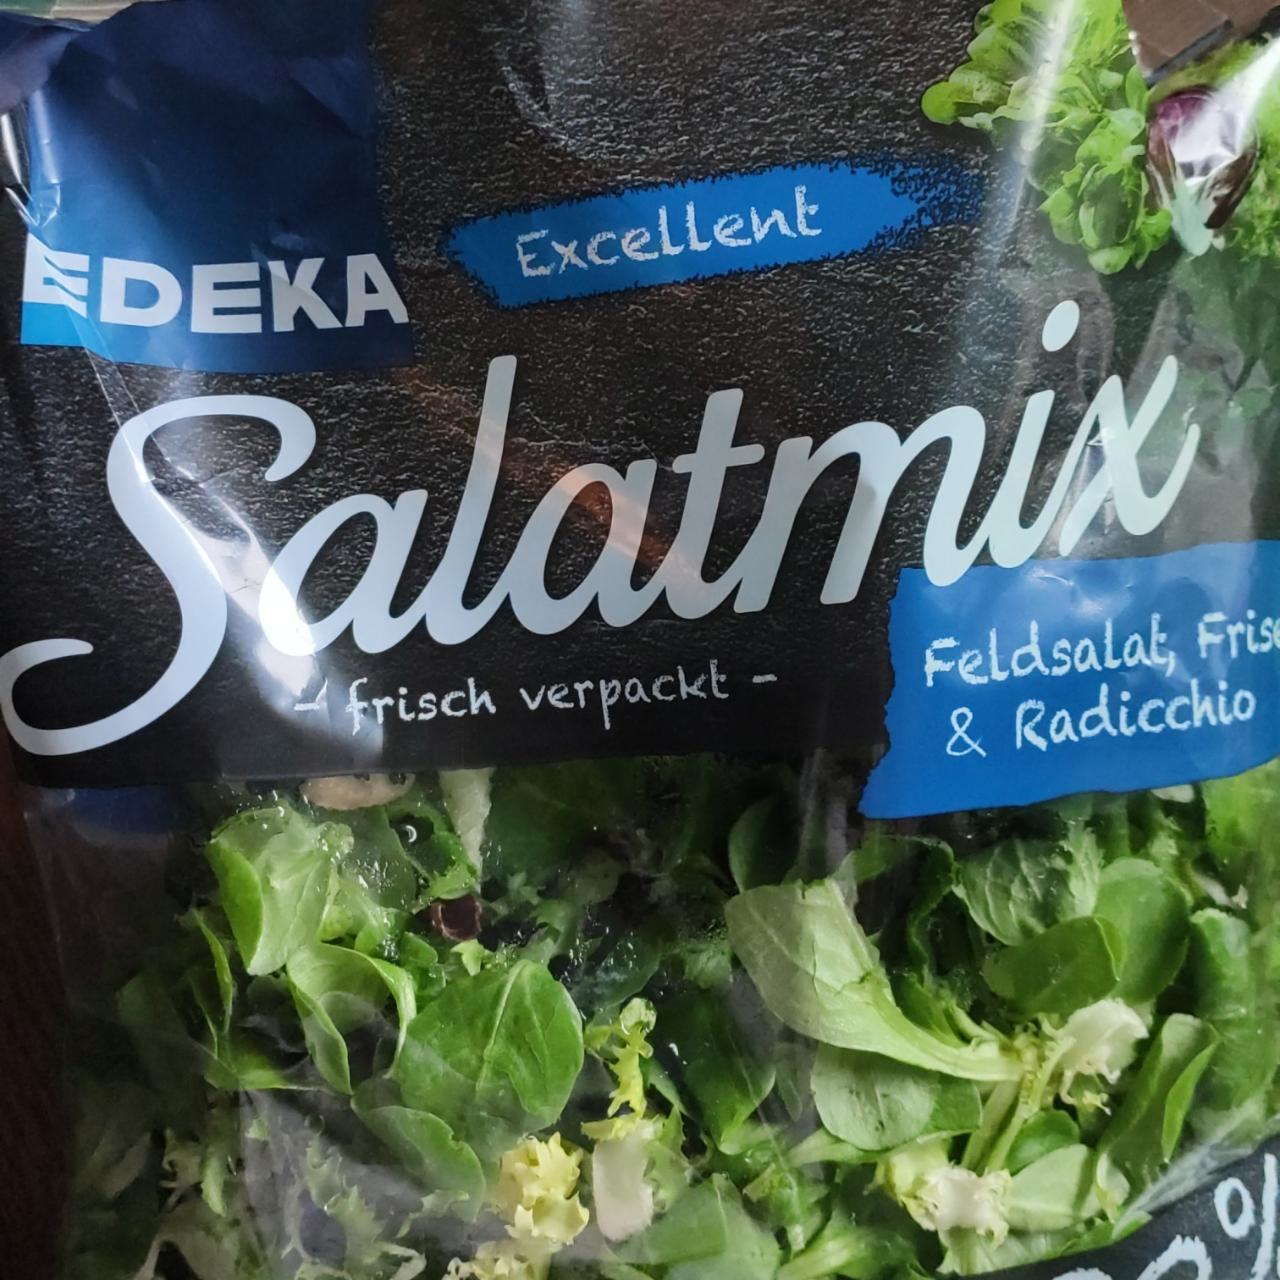 Képek - Salatmix Excellent Edeka